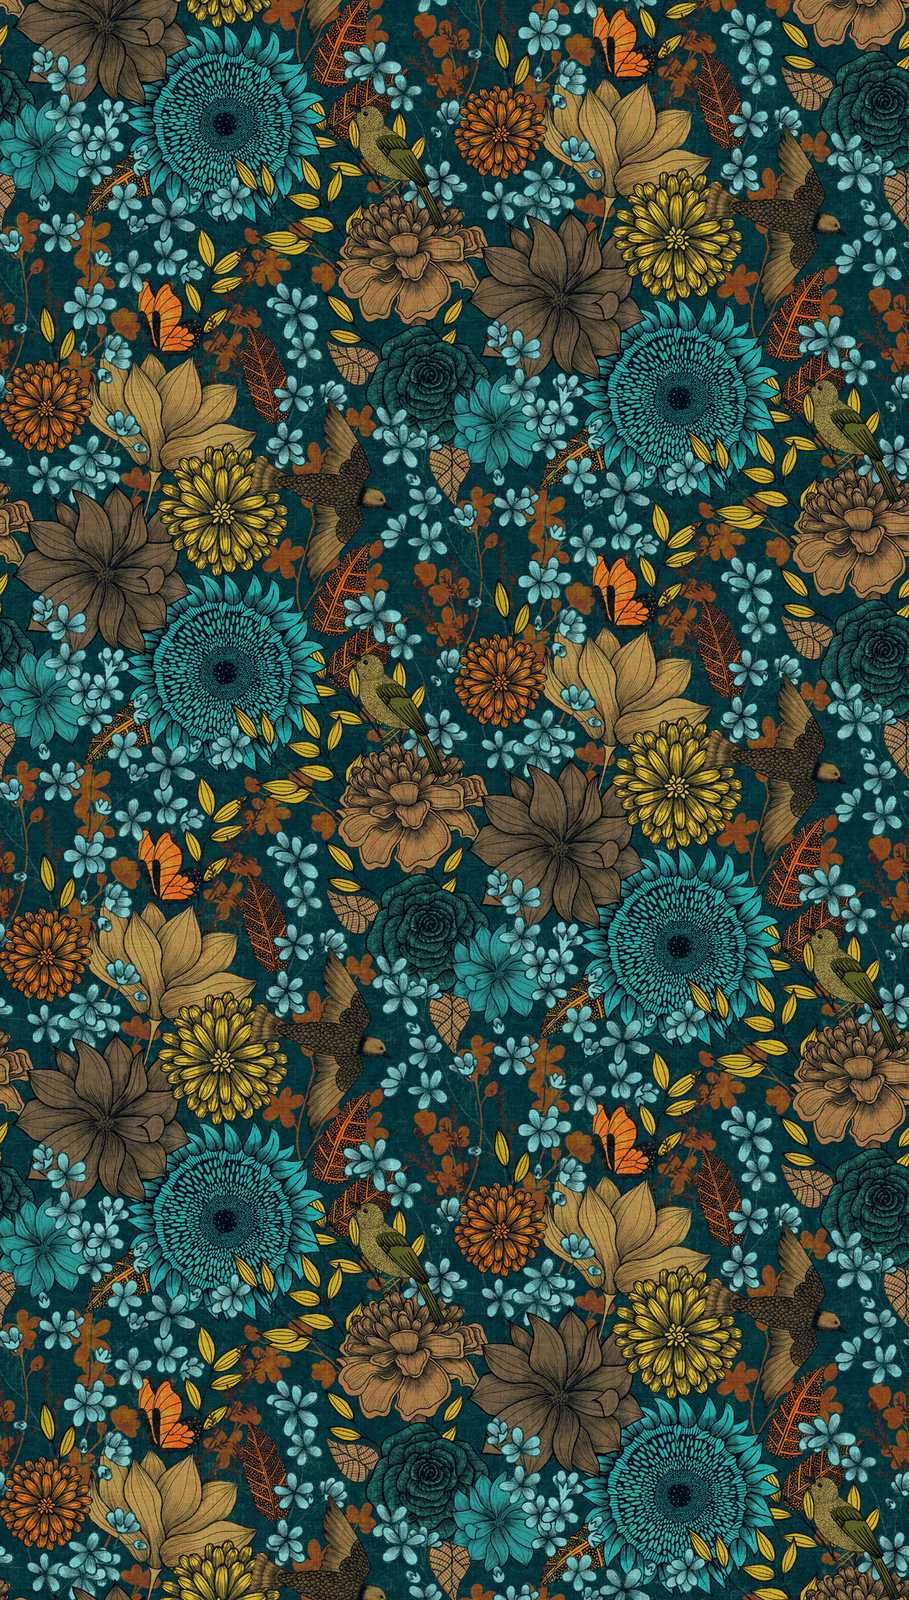             Bunte Vliestapete mit großflächigen Blumenmuster mit Blüten & Blätter – Blau, Beige, Braun
        